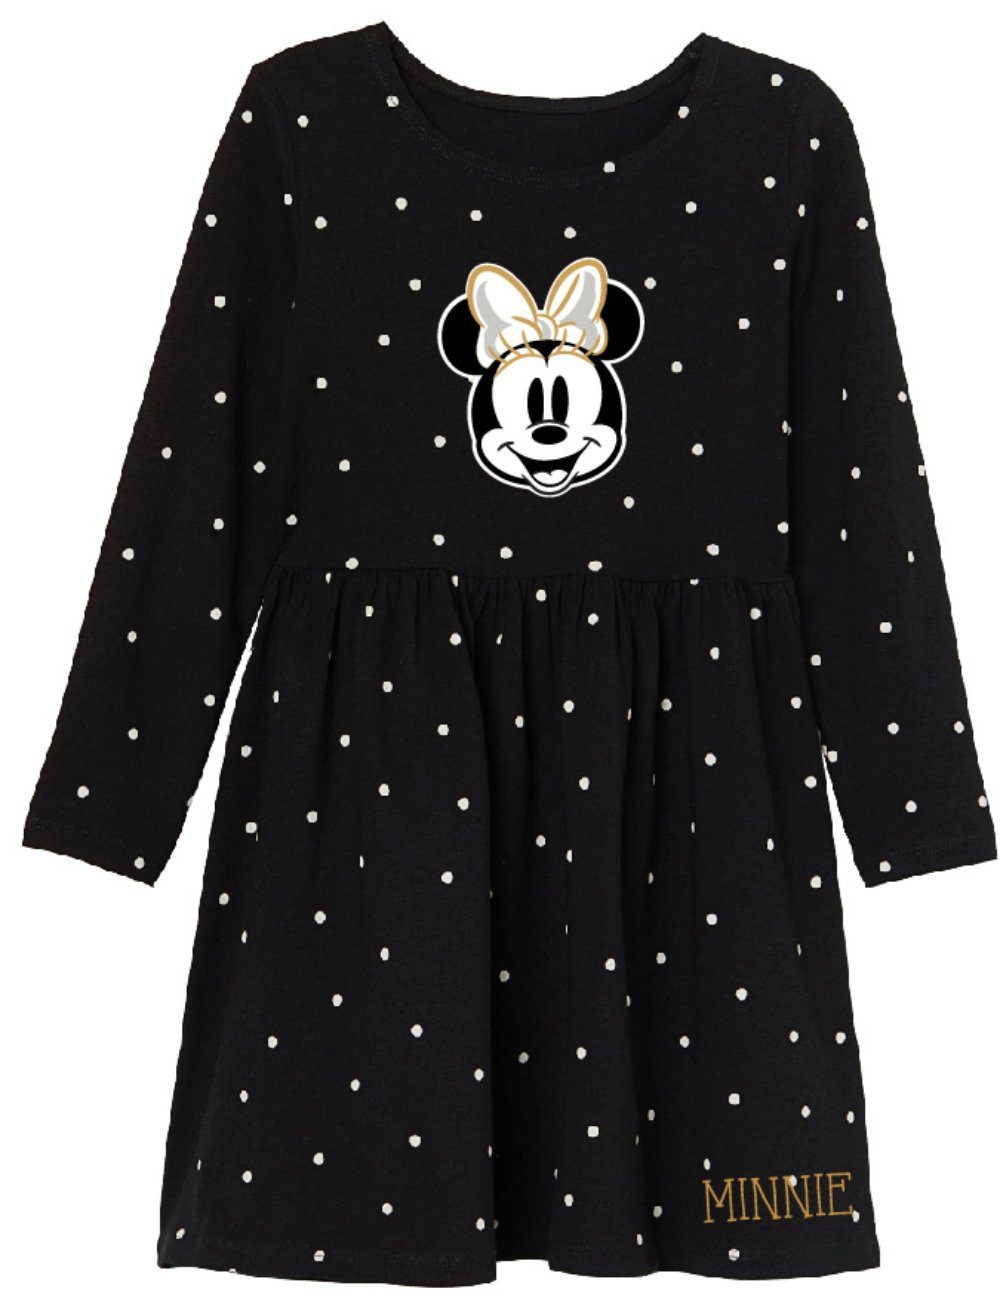 Disney Minnie Mouse Sommerkleid »Minnie Mädchen Kleid - Schwarz Golden« Gr.  104 bis 134, 100% Baumwolle online kaufen | OTTO